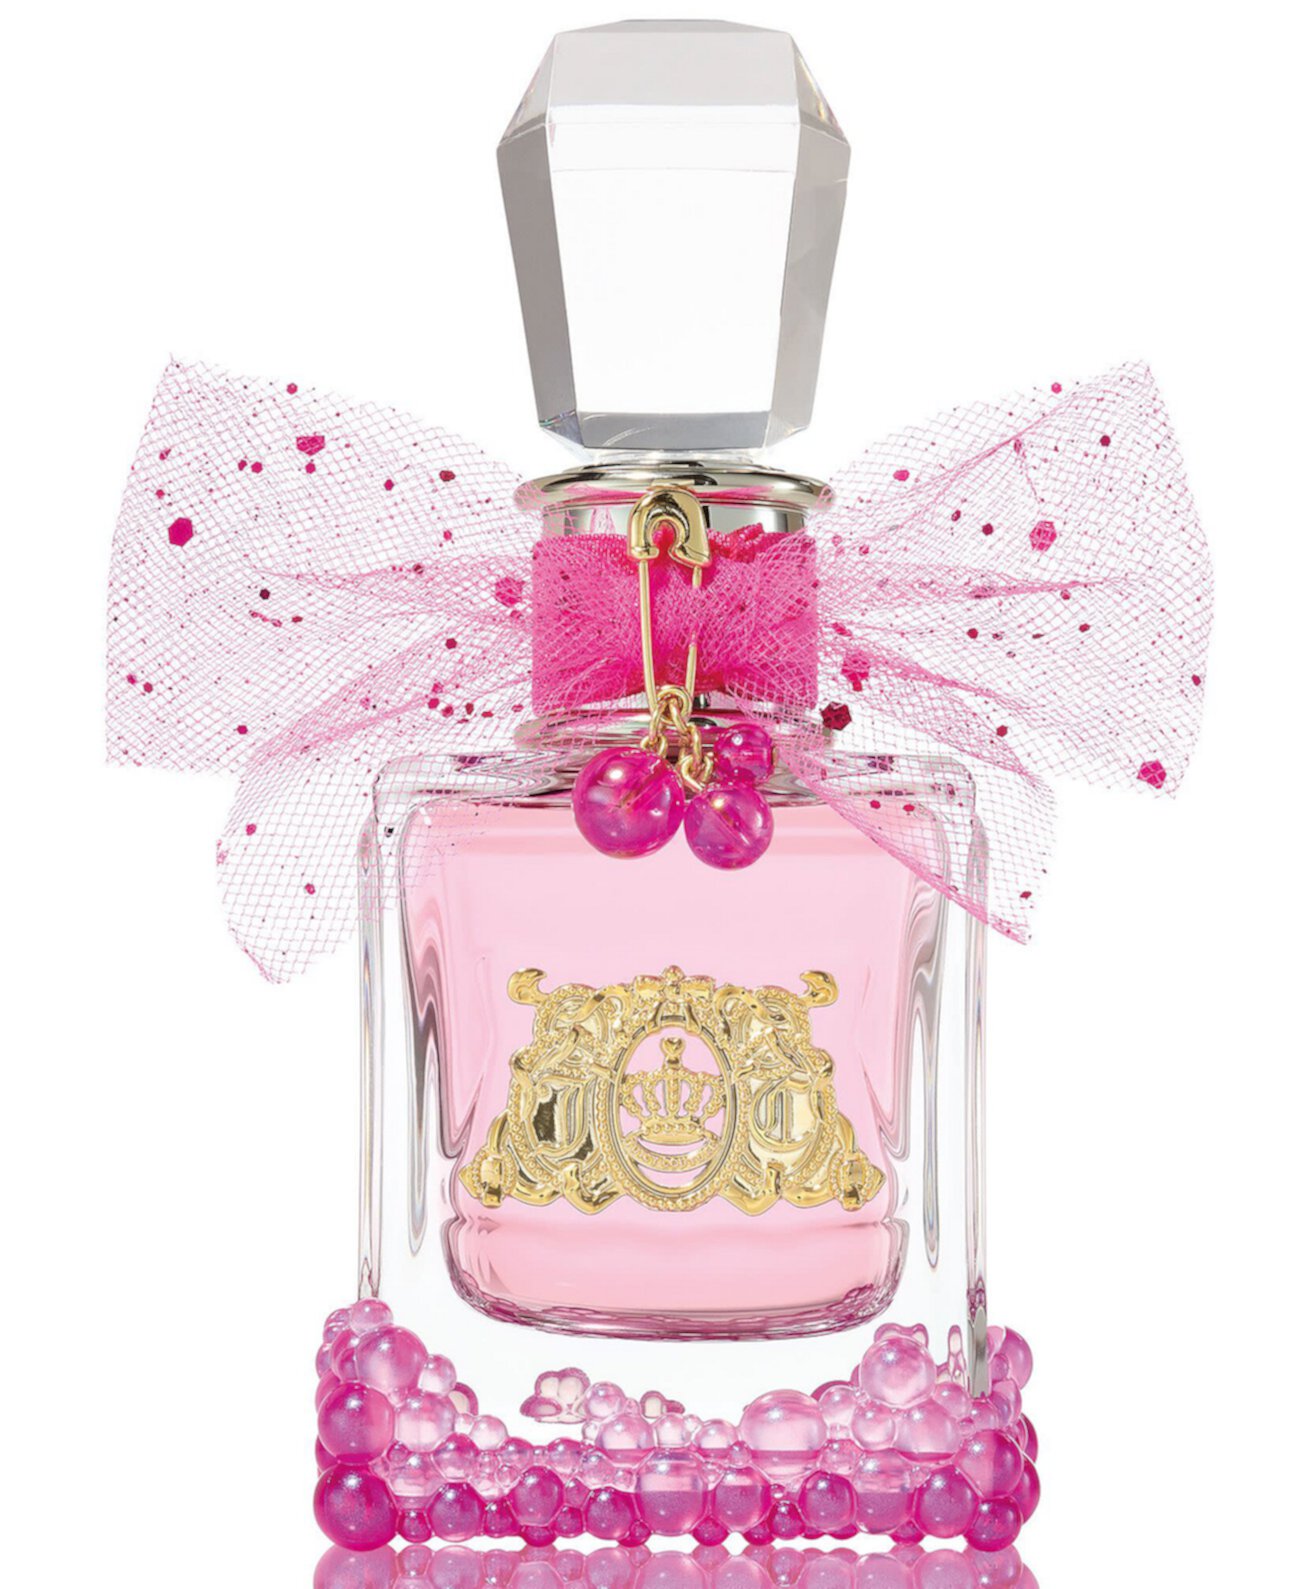 Viva La Juicy Le Bubbly Eau de Parfum Spray, 1.7-oz. Juicy Couture